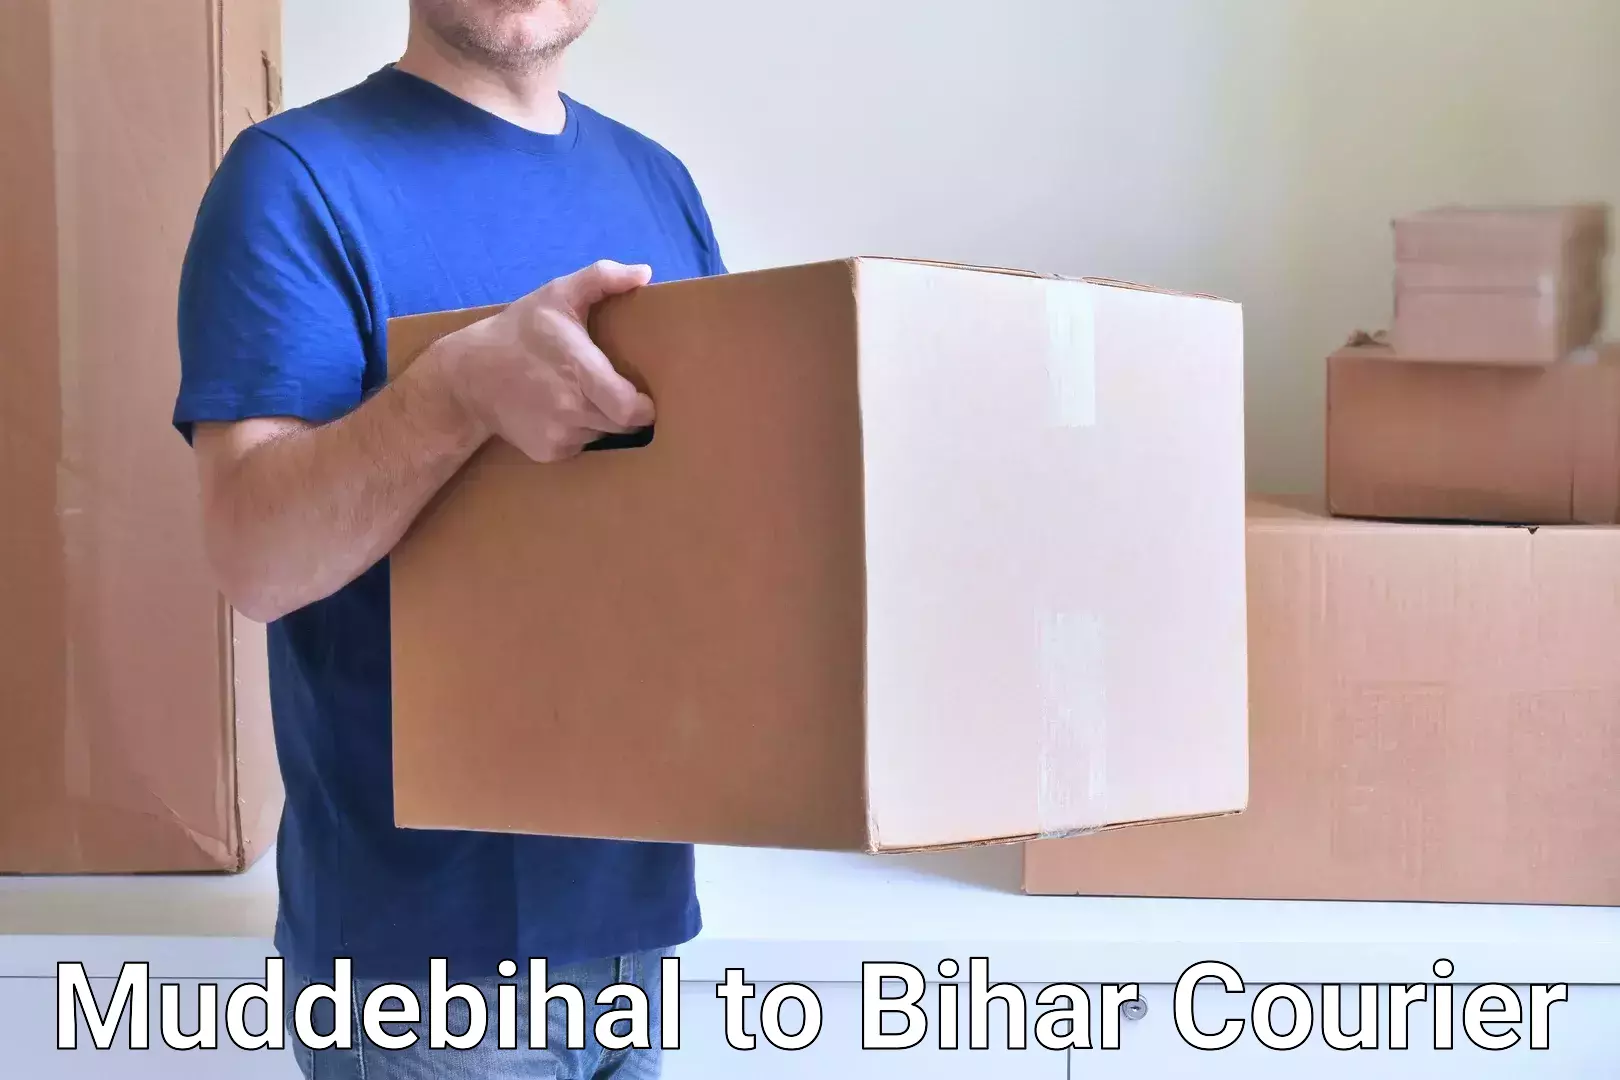 Courier service comparison Muddebihal to Jhajha